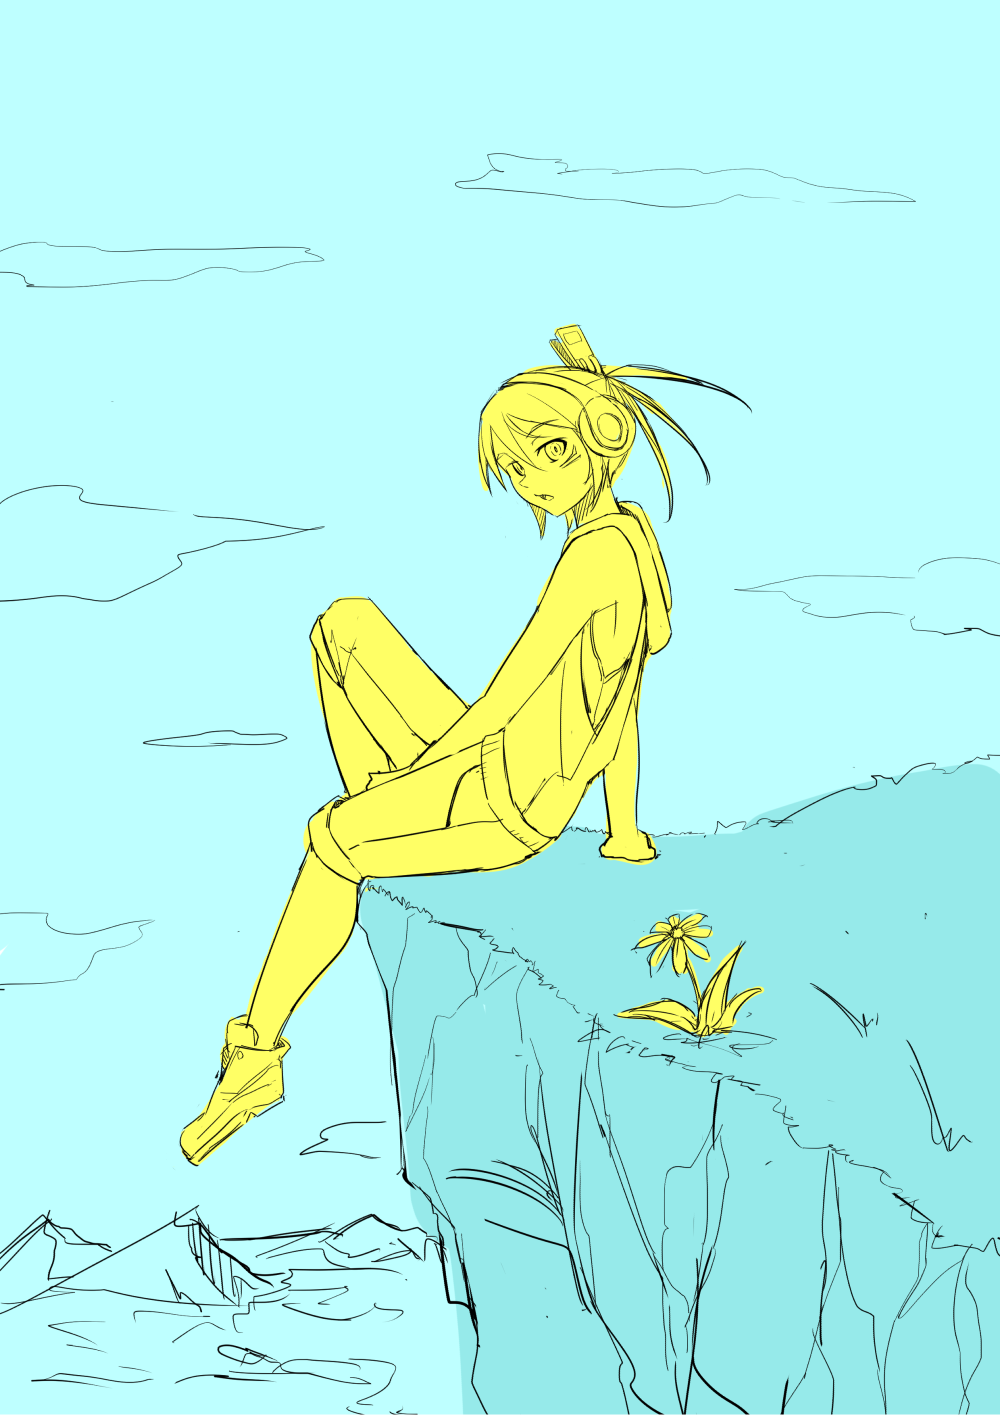 崖っぷちに座る少女と一輪の花